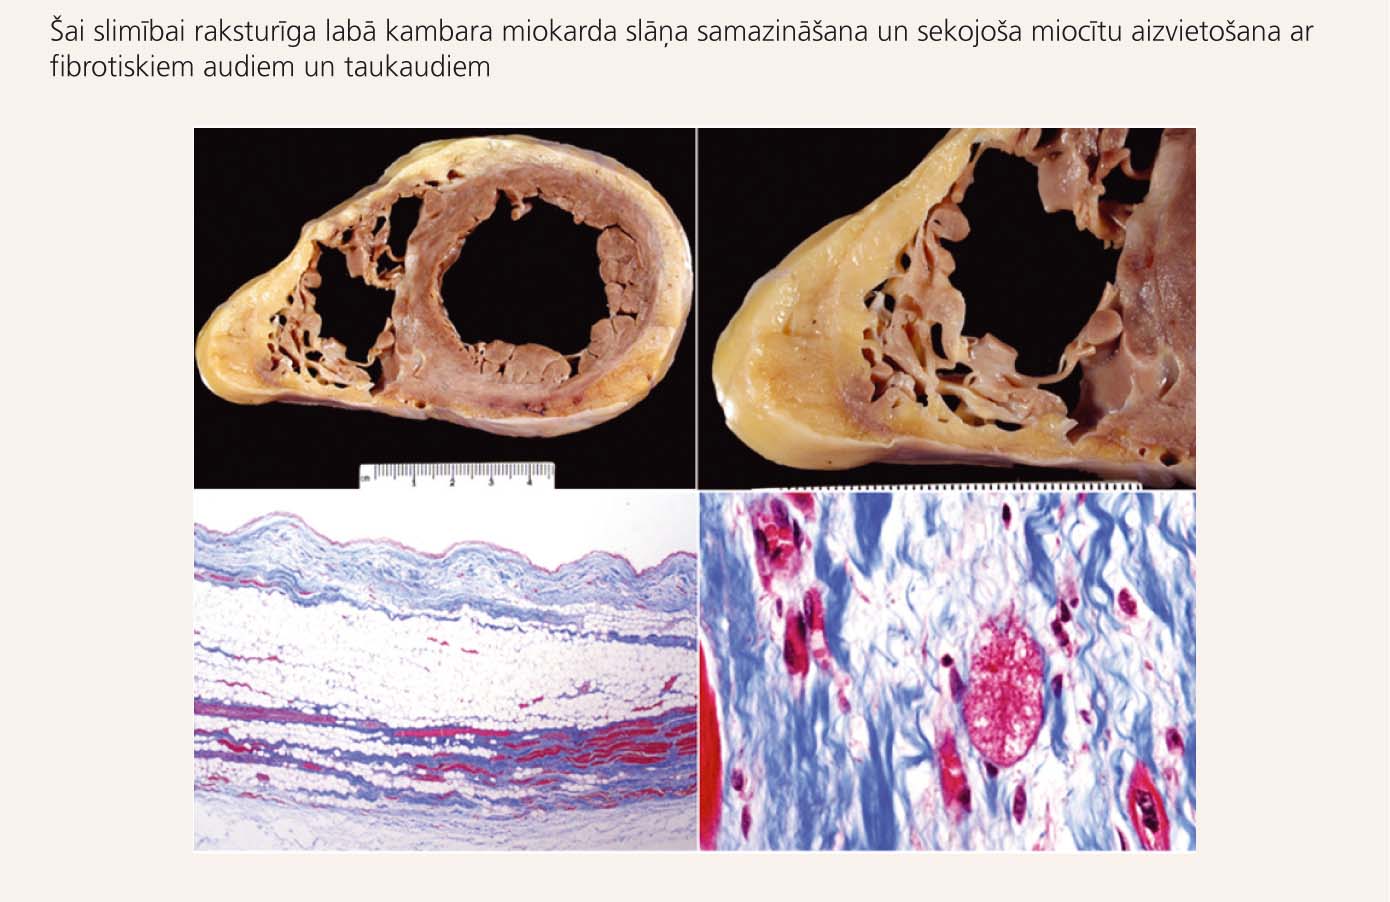 Makroskopisks (augšējie preparāti) un mikroskopisks  (apakšējie preparāti) sirds izskats pie ALKD